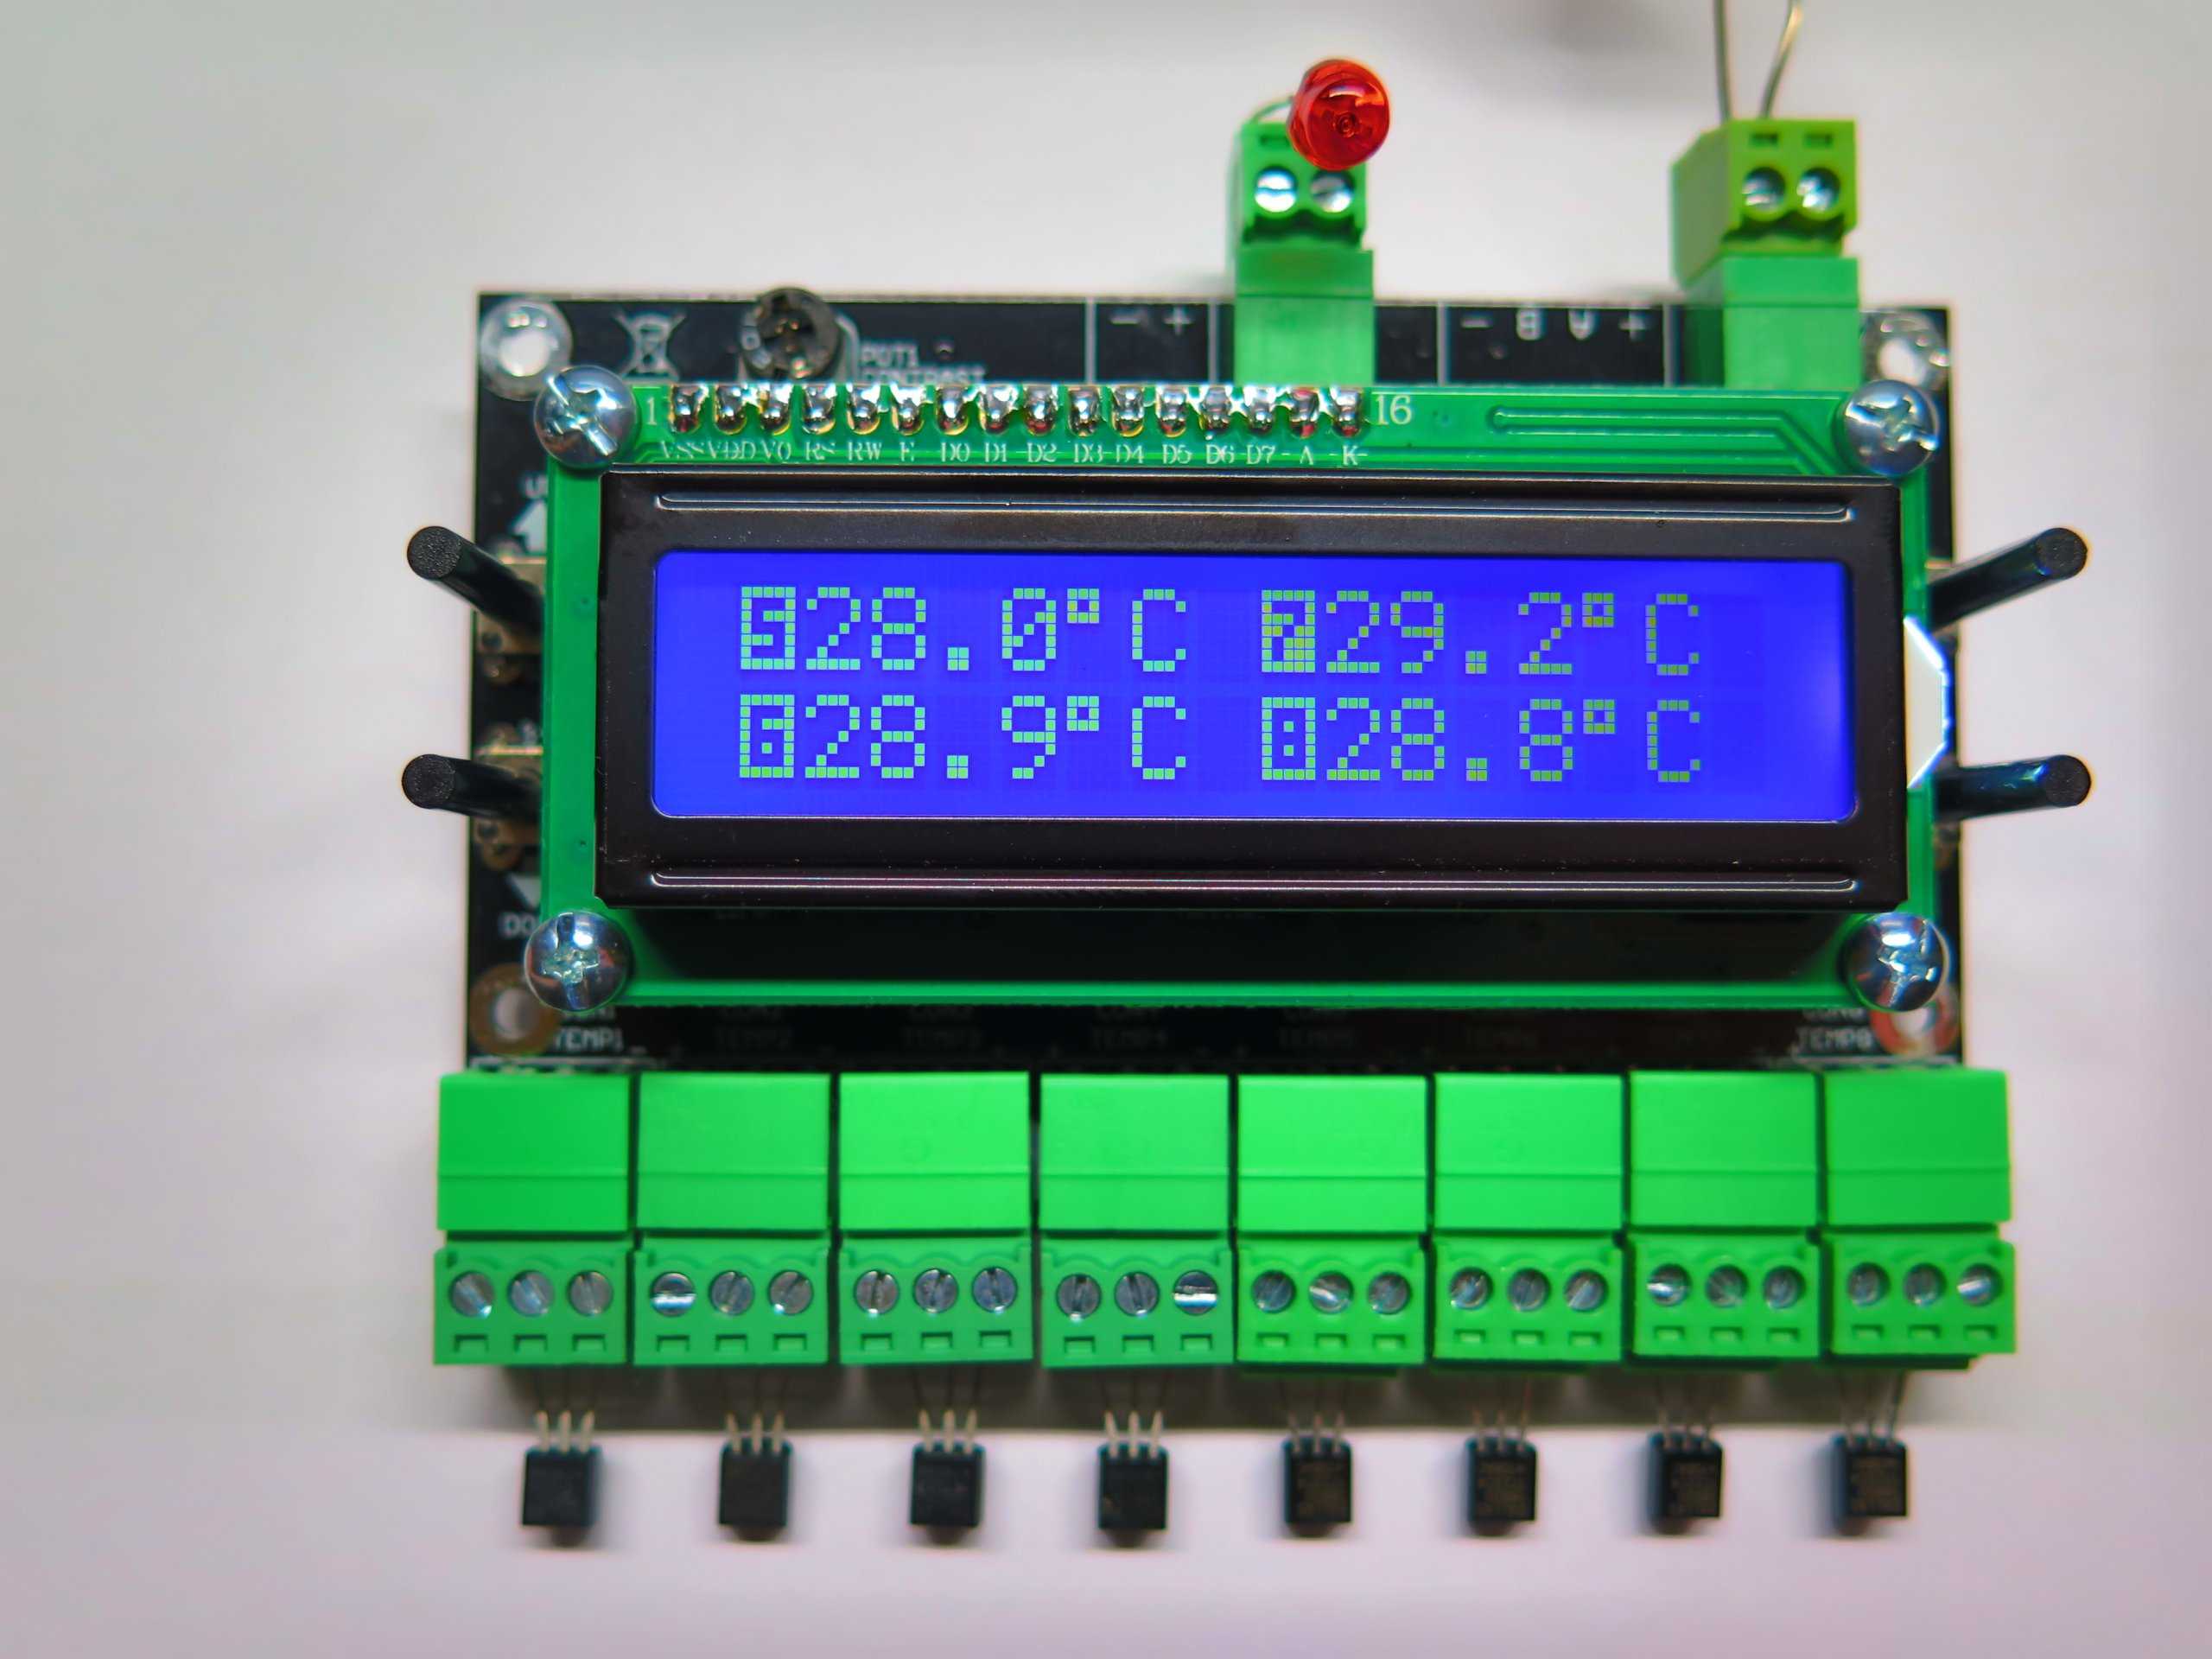 Термостат на микроконтроллере с использованием от 1 до 15 датчиков ds18b20 | уголок радиолюбителя